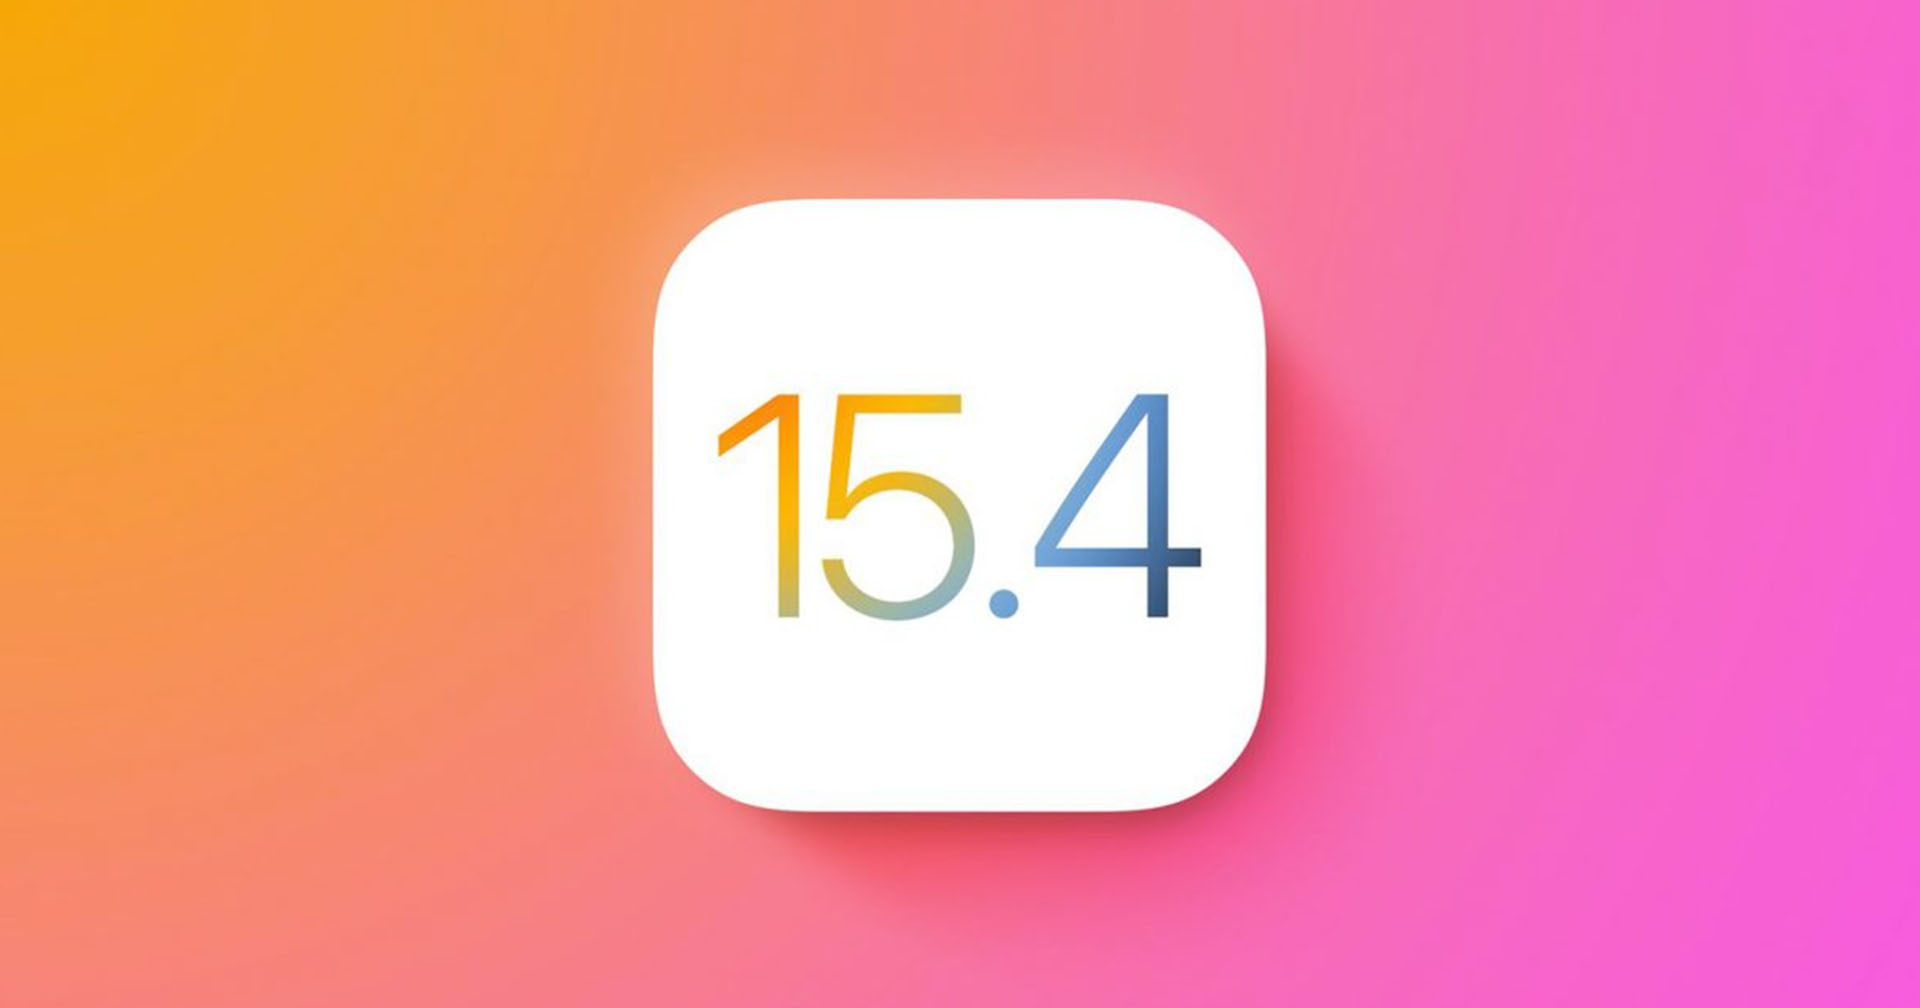 ผู้ใช้งาน iOS บางรายเผย iOS 15.4 กินแบตเตอรี่มากกว่าที่หลายคนคิดเอาไว้